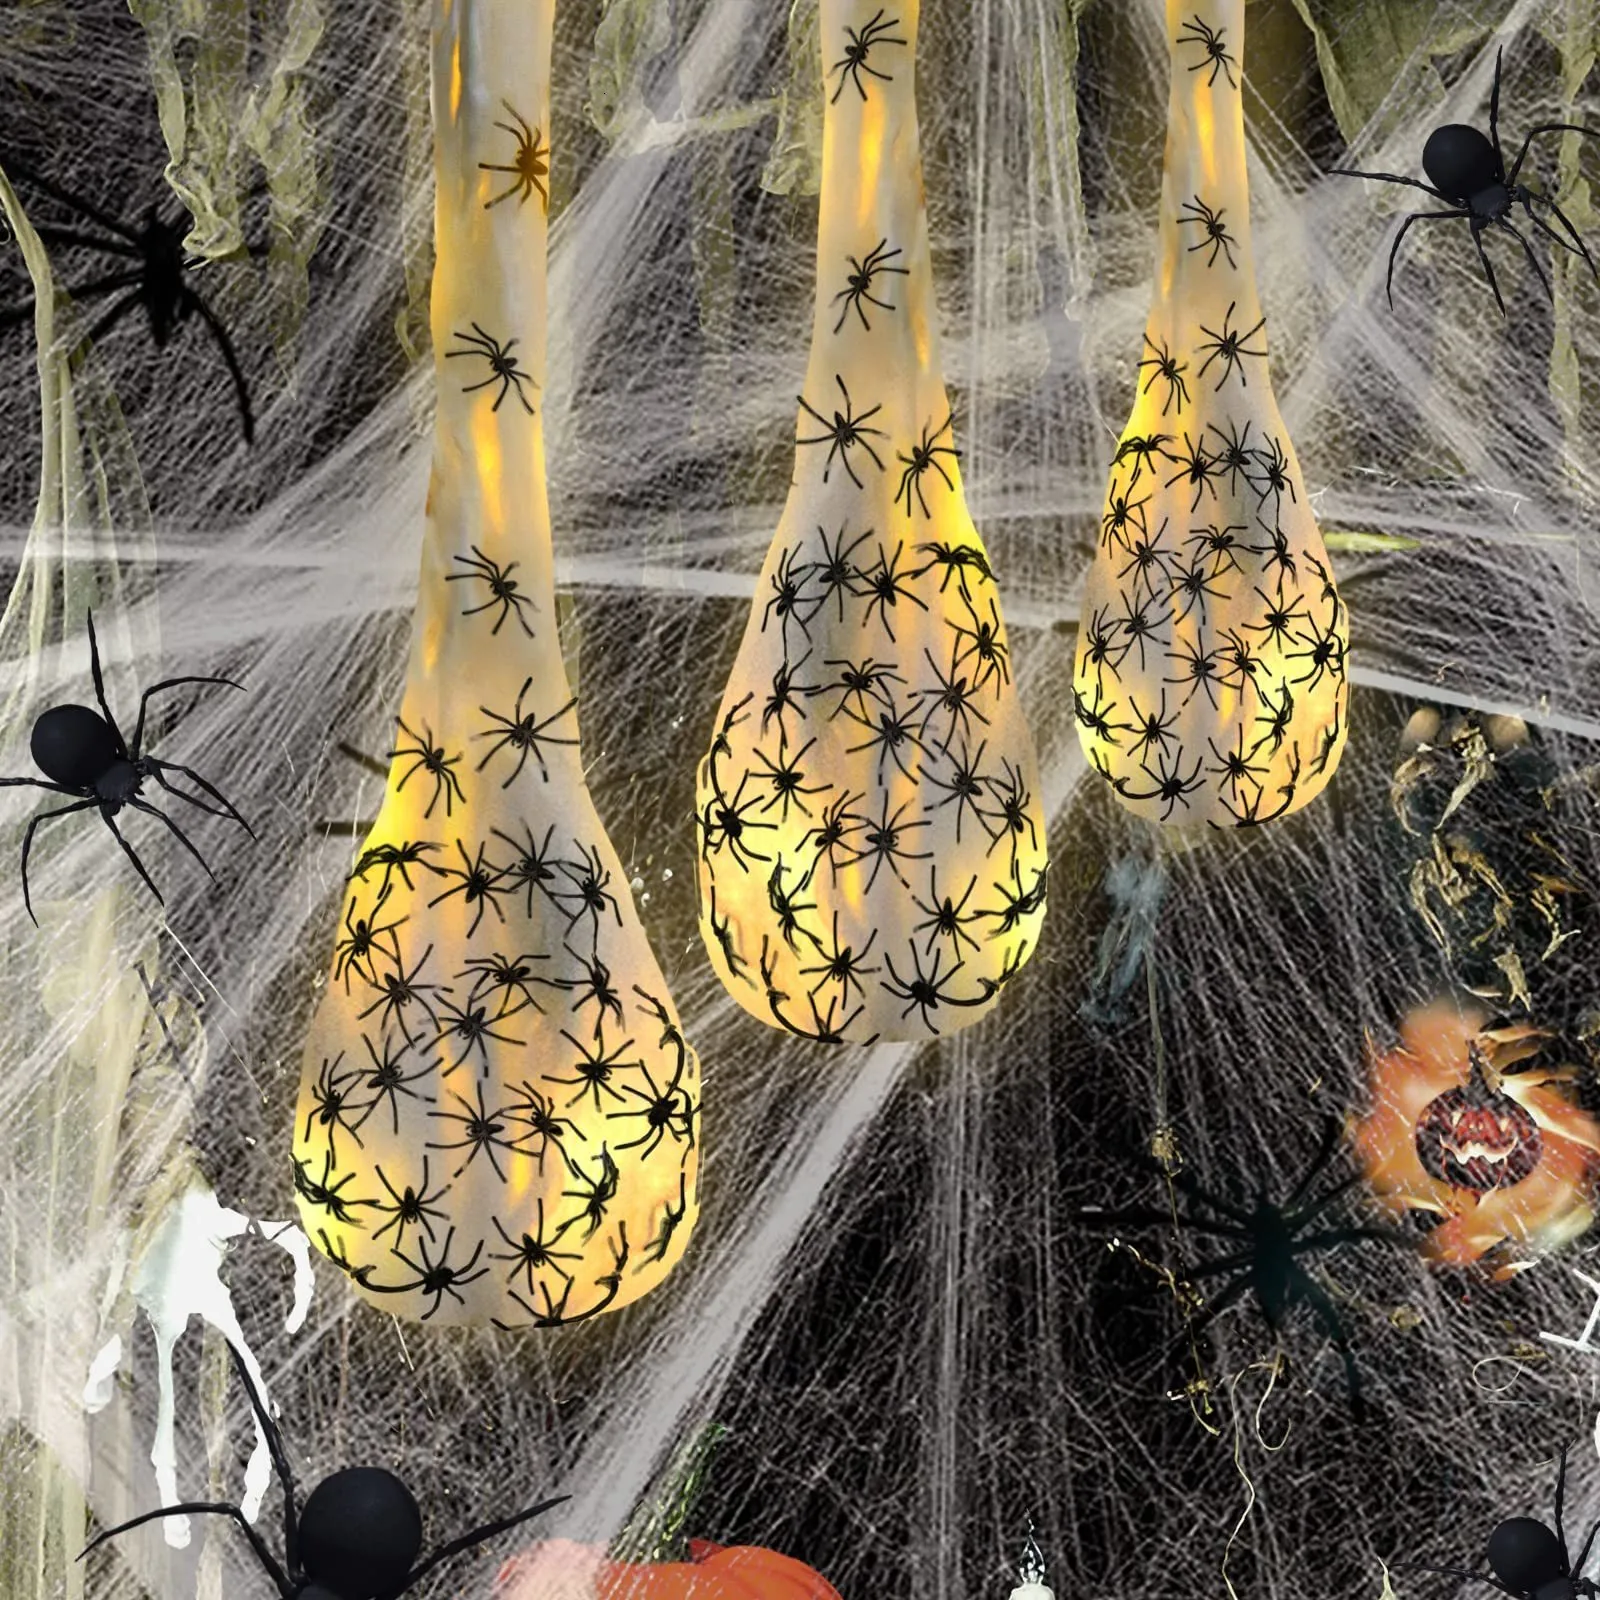 Другое мероприятие вечеринка поставляет Хэллоуин, висящие пауковые яичные мешки с огнями Реалистичные пауки с привидениями, посвященные дому для внутреннего открытого декора вечеринки на открытом воздухе 230825